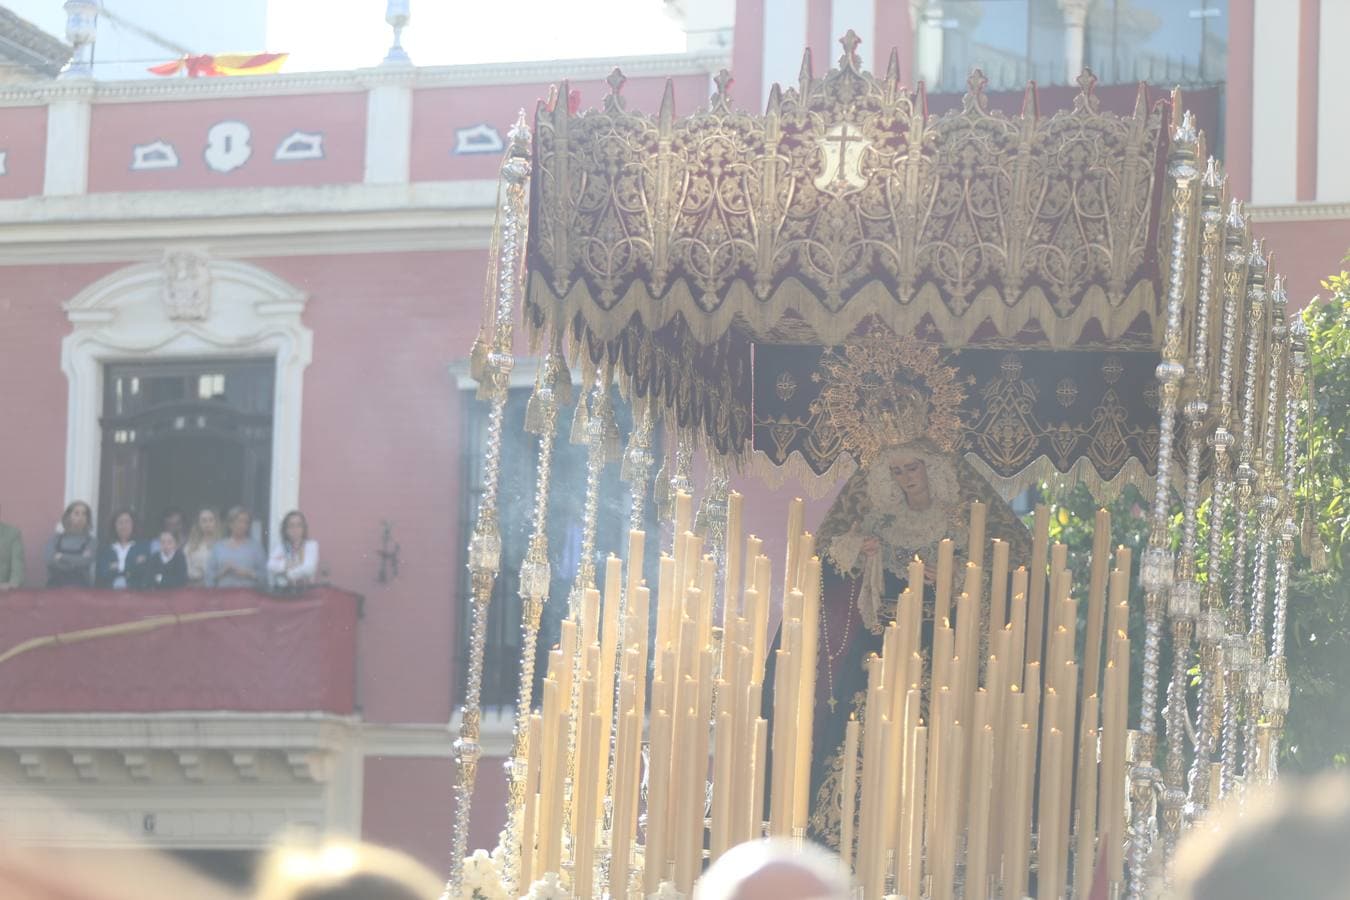 En fotos, San Martín vive la salida de la Lanzada en la Semana Santa de Sevilla 2018